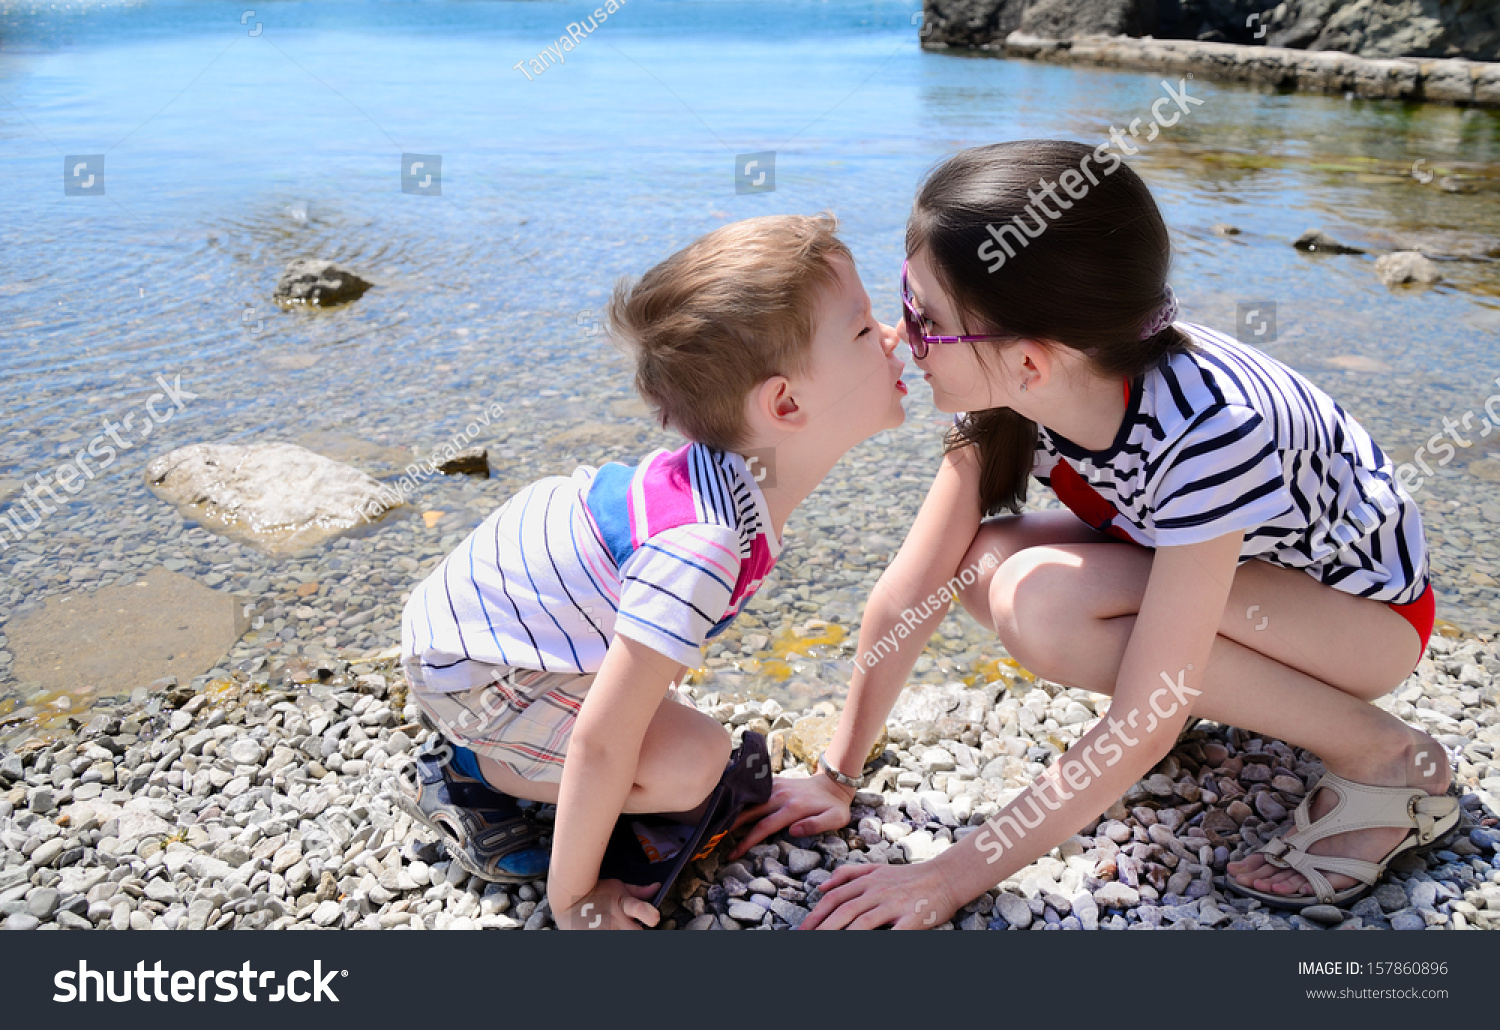 Брат лижет маму. Сестрички на пляжу лет 10. Маленький мальчик и девочка занимаются. Брат и сестра целуются. Поцелуй в 10 лет.